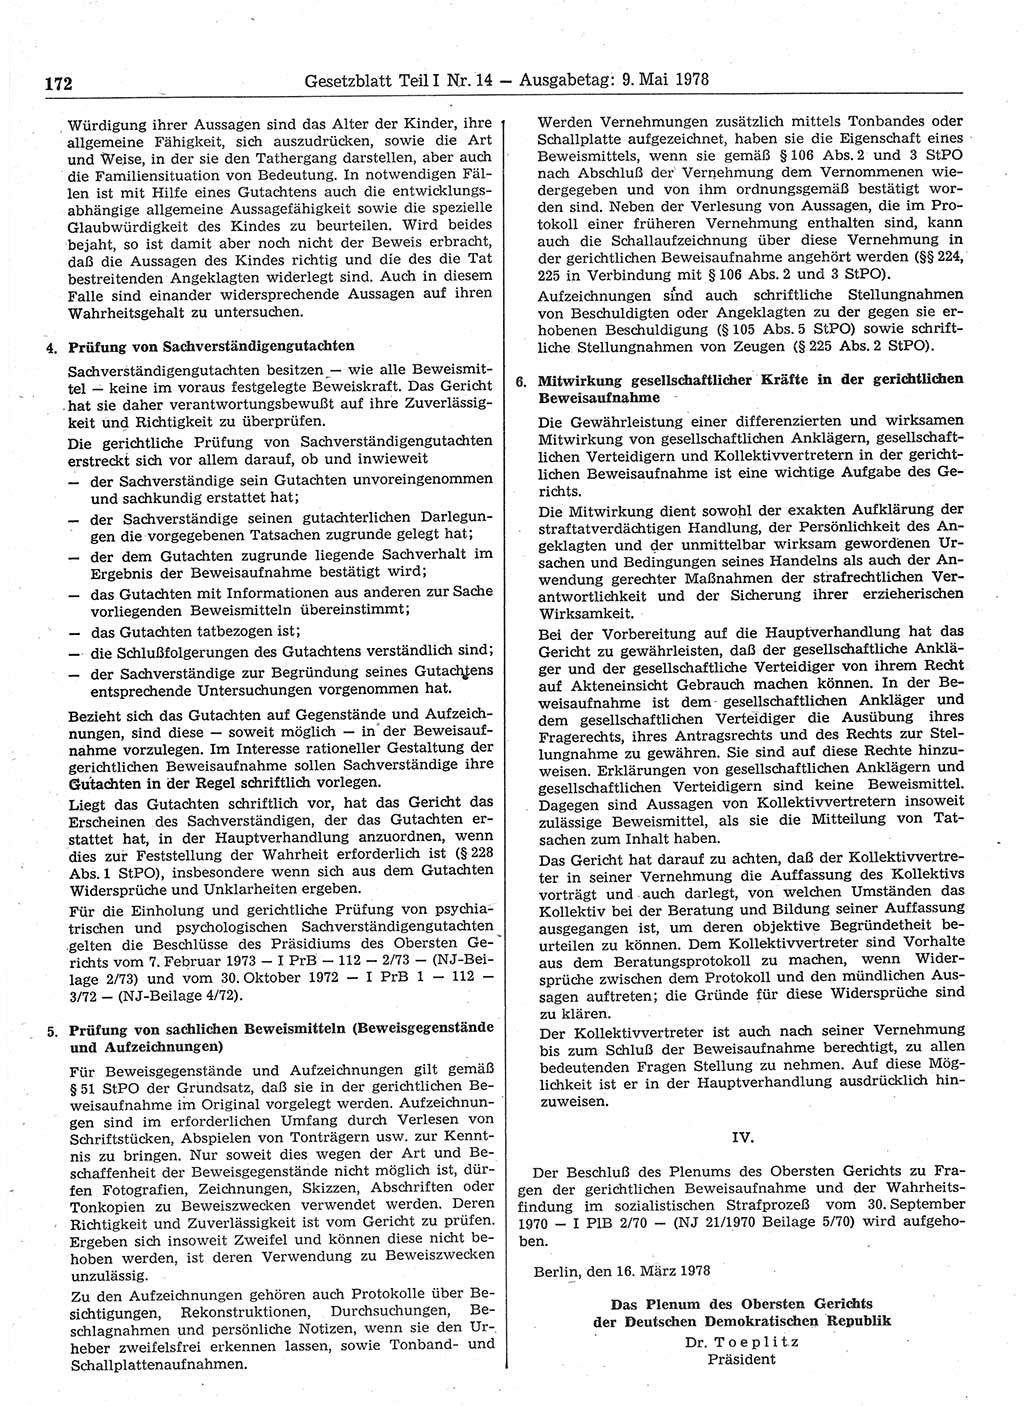 Gesetzblatt (GBl.) der Deutschen Demokratischen Republik (DDR) Teil Ⅰ 1978, Seite 172 (GBl. DDR Ⅰ 1978, S. 172)